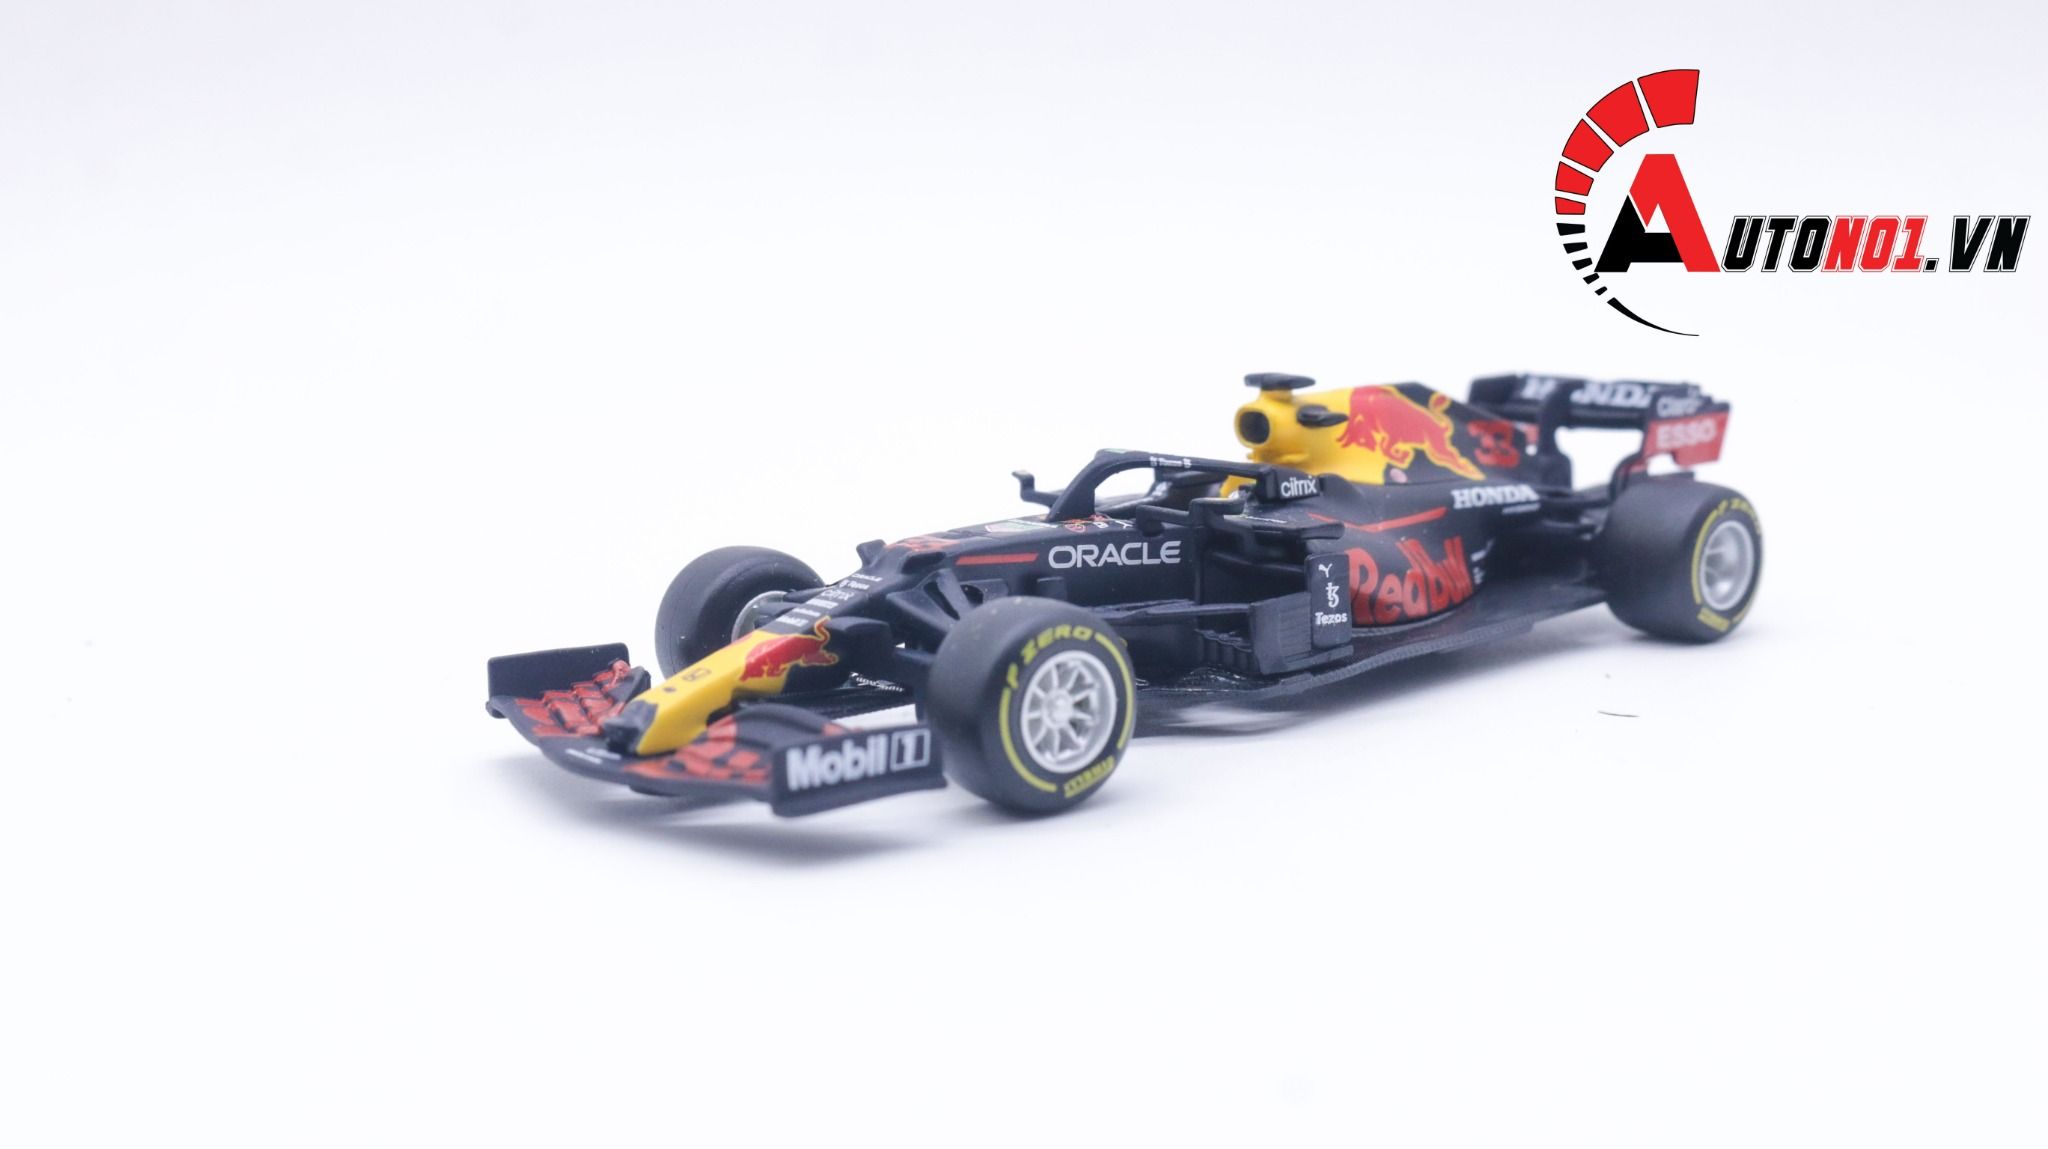  Mô hình xe đua F1 Red Bull Racing Honda RB16 #33 Max Verstappe 2021 tỉ lệ 1:43 Bburago OT208 